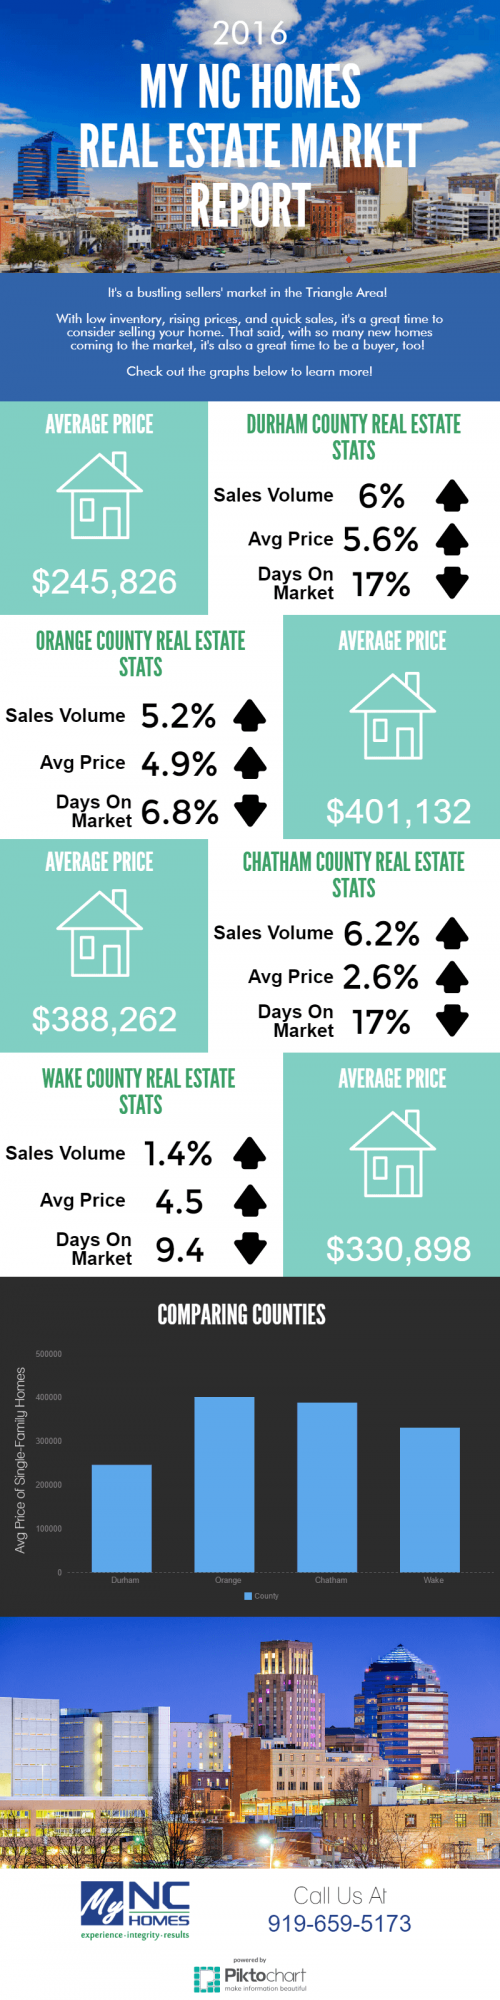 December 2016 real estate market statistics